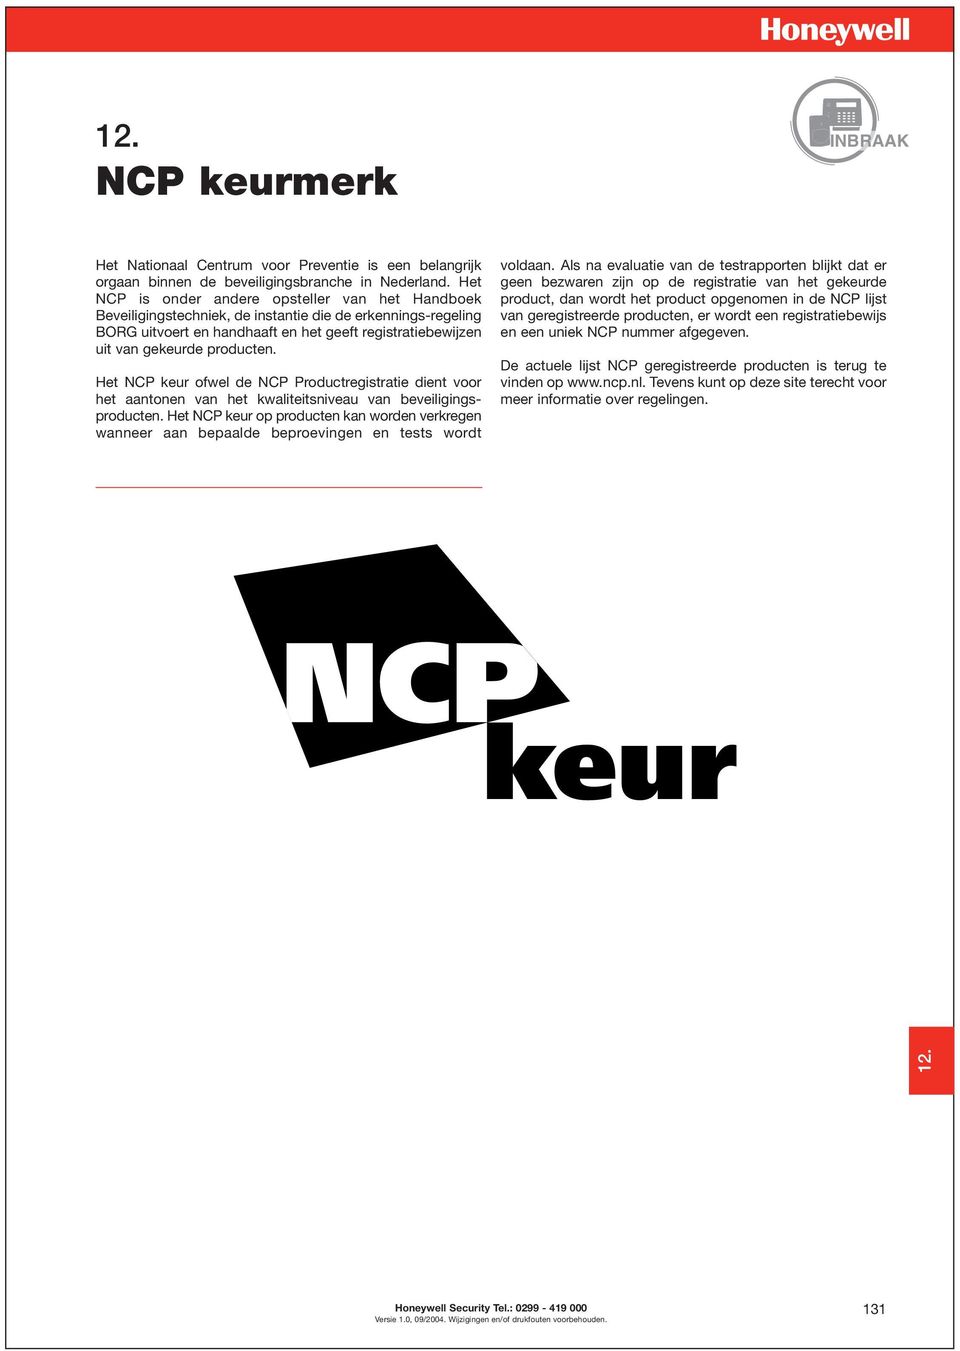 Het NCP keur ofwel de NCP Productregistratie dient voor het aantonen van het kwaliteitsniveau van beveiligingsproducten.